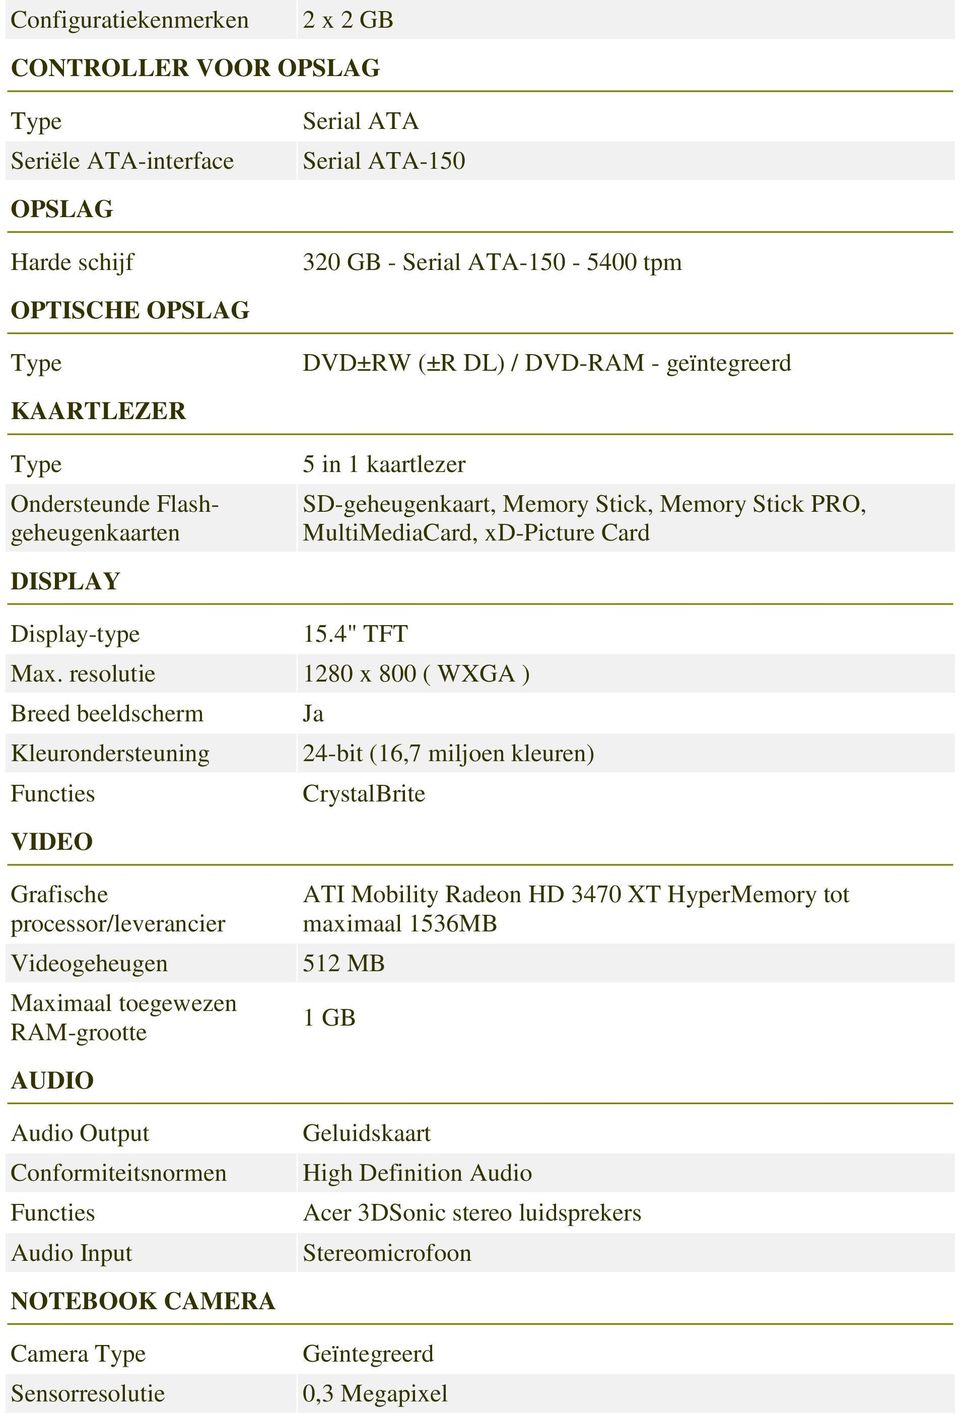 resolutie 1280 x 800 ( WXGA ) Breed beeldscherm Kleurondersteuning 24-bit (16,7 miljoen kleuren) CrystalBrite VIDEO Grafische processor/leverancier Videogeheugen Maximaal toegewezen RAM-grootte ATI